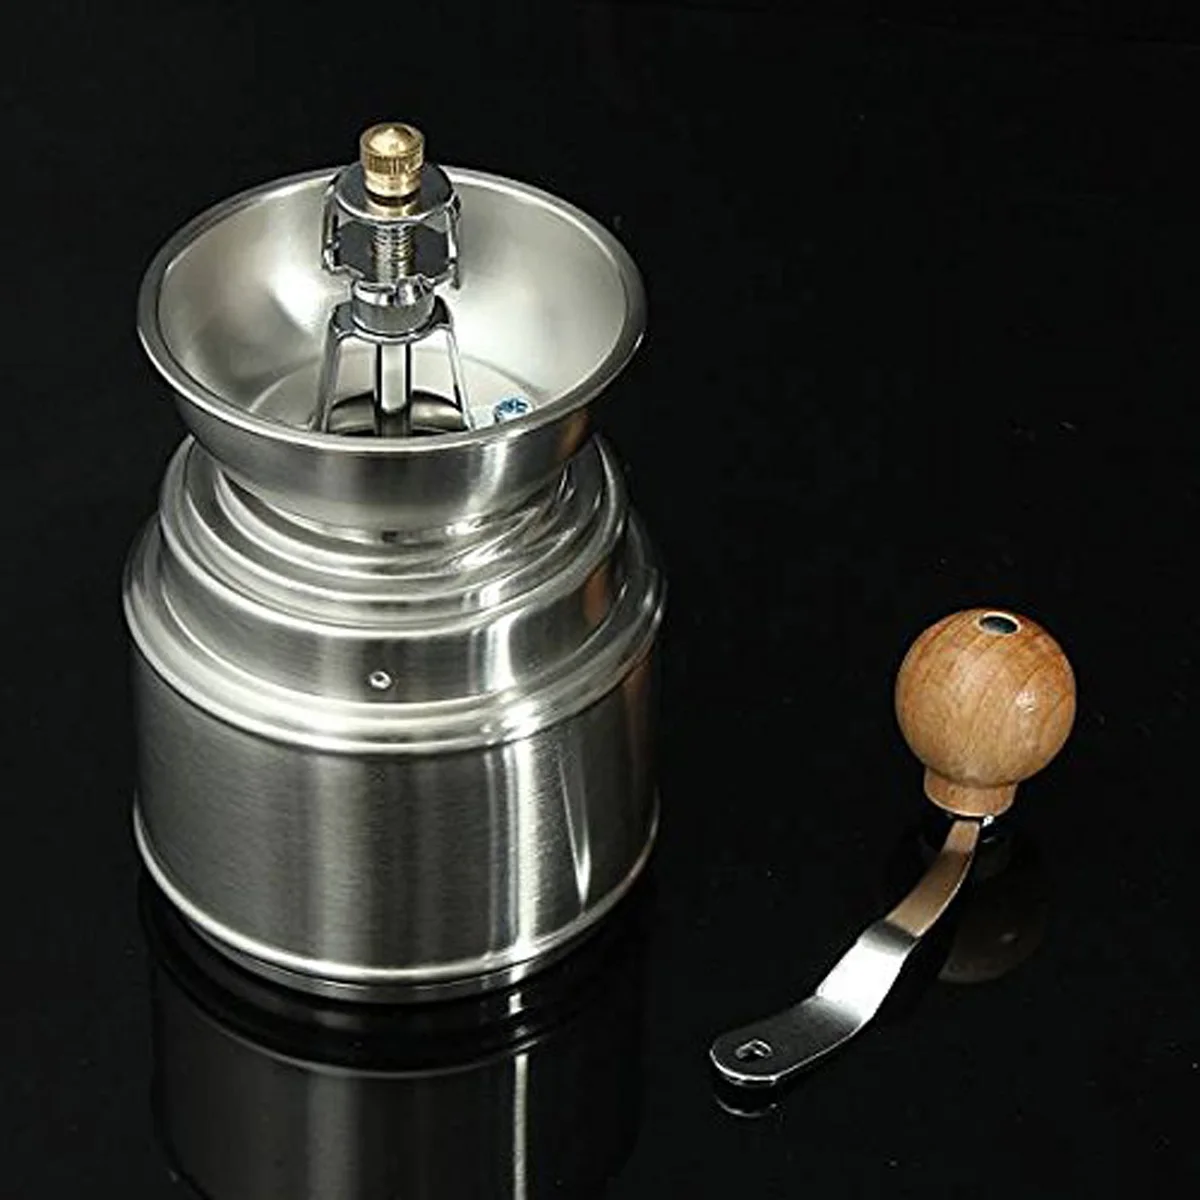 Нержавеющая сталь ручной для специй зерновой кофе шлифовальные станки кофемолка мельница с керамика Core